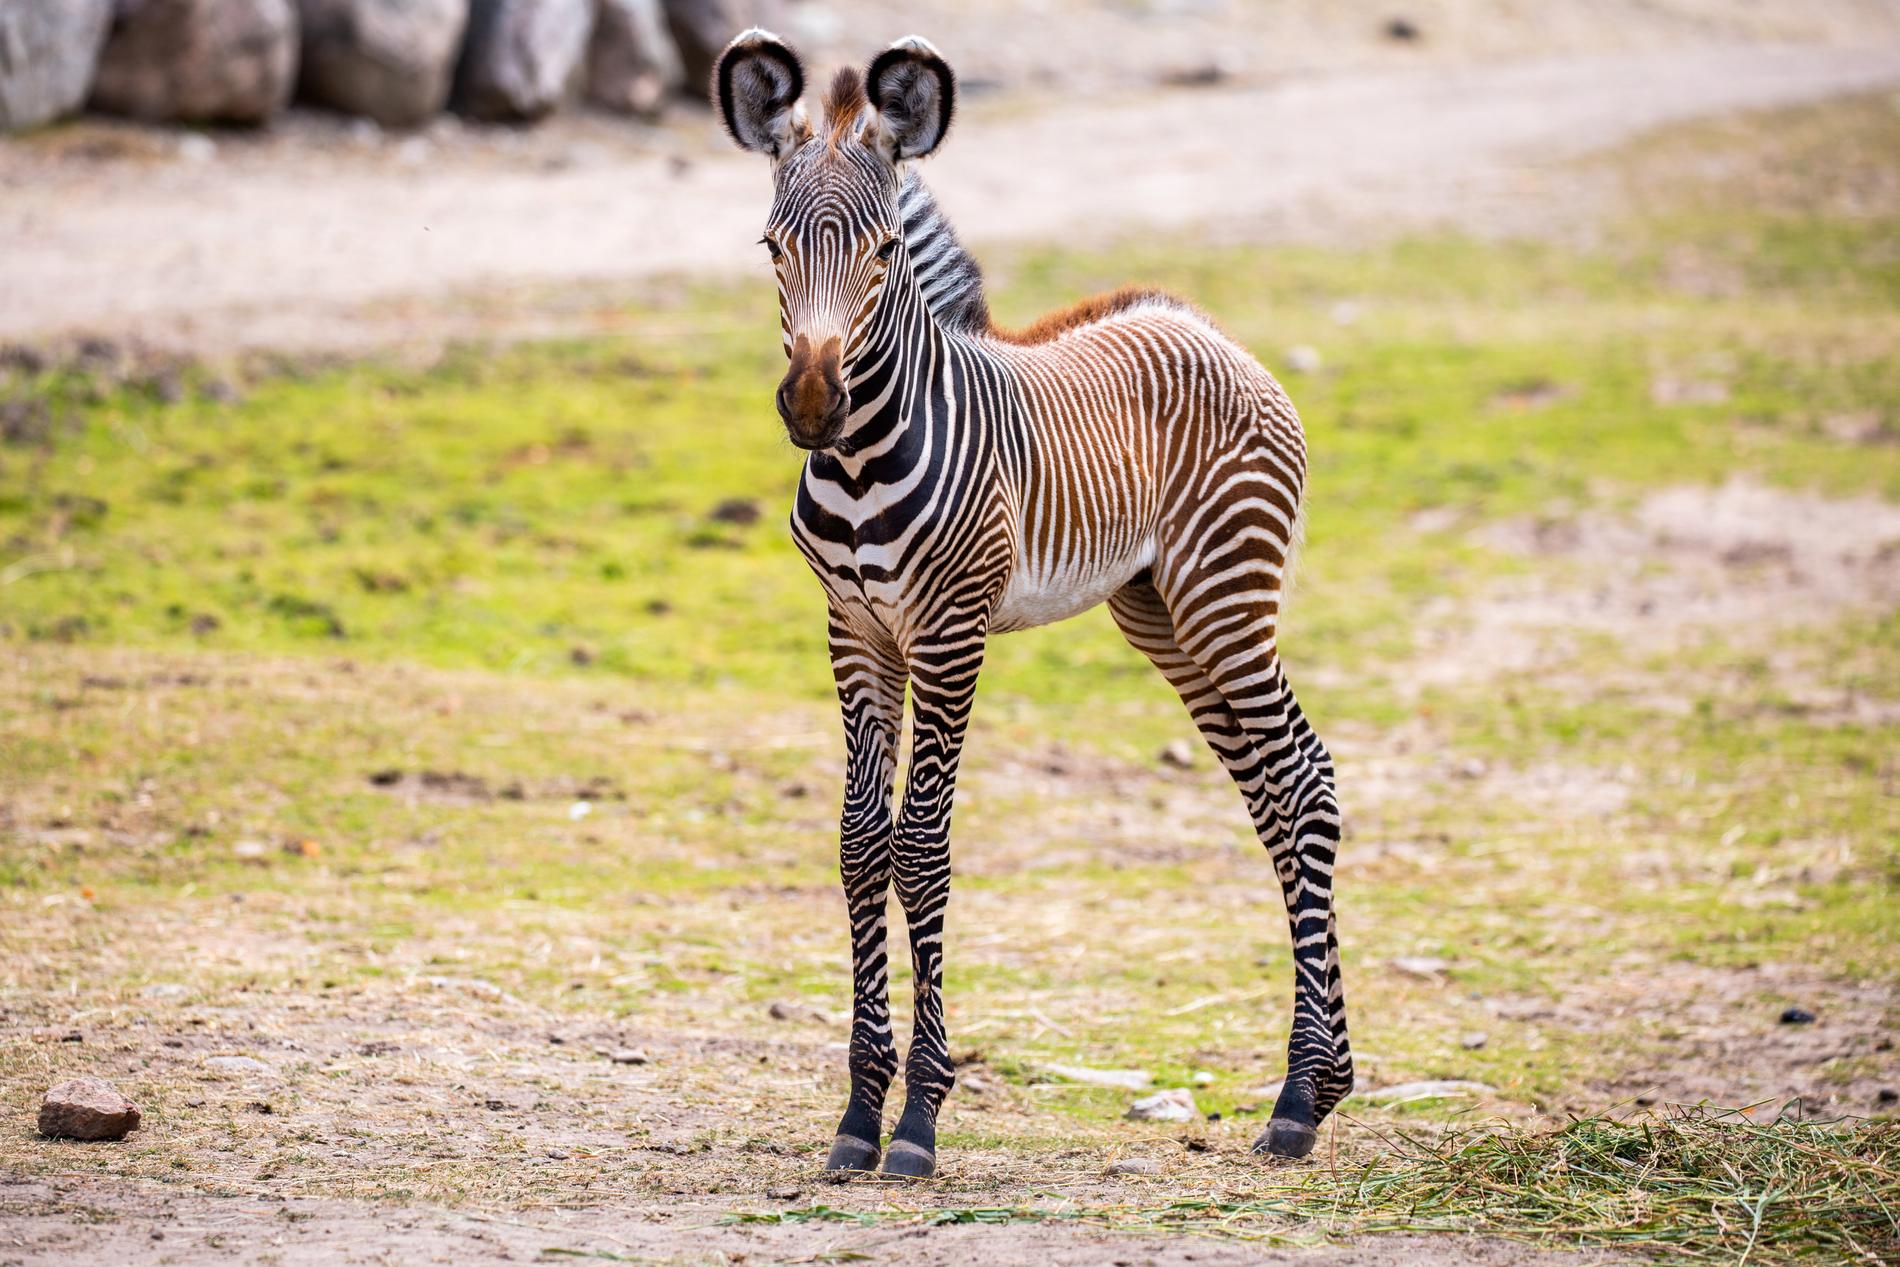 Den unge Lesotho. Kolmårdens zebror är av arten grevyzebror, som är utrotningshotade.